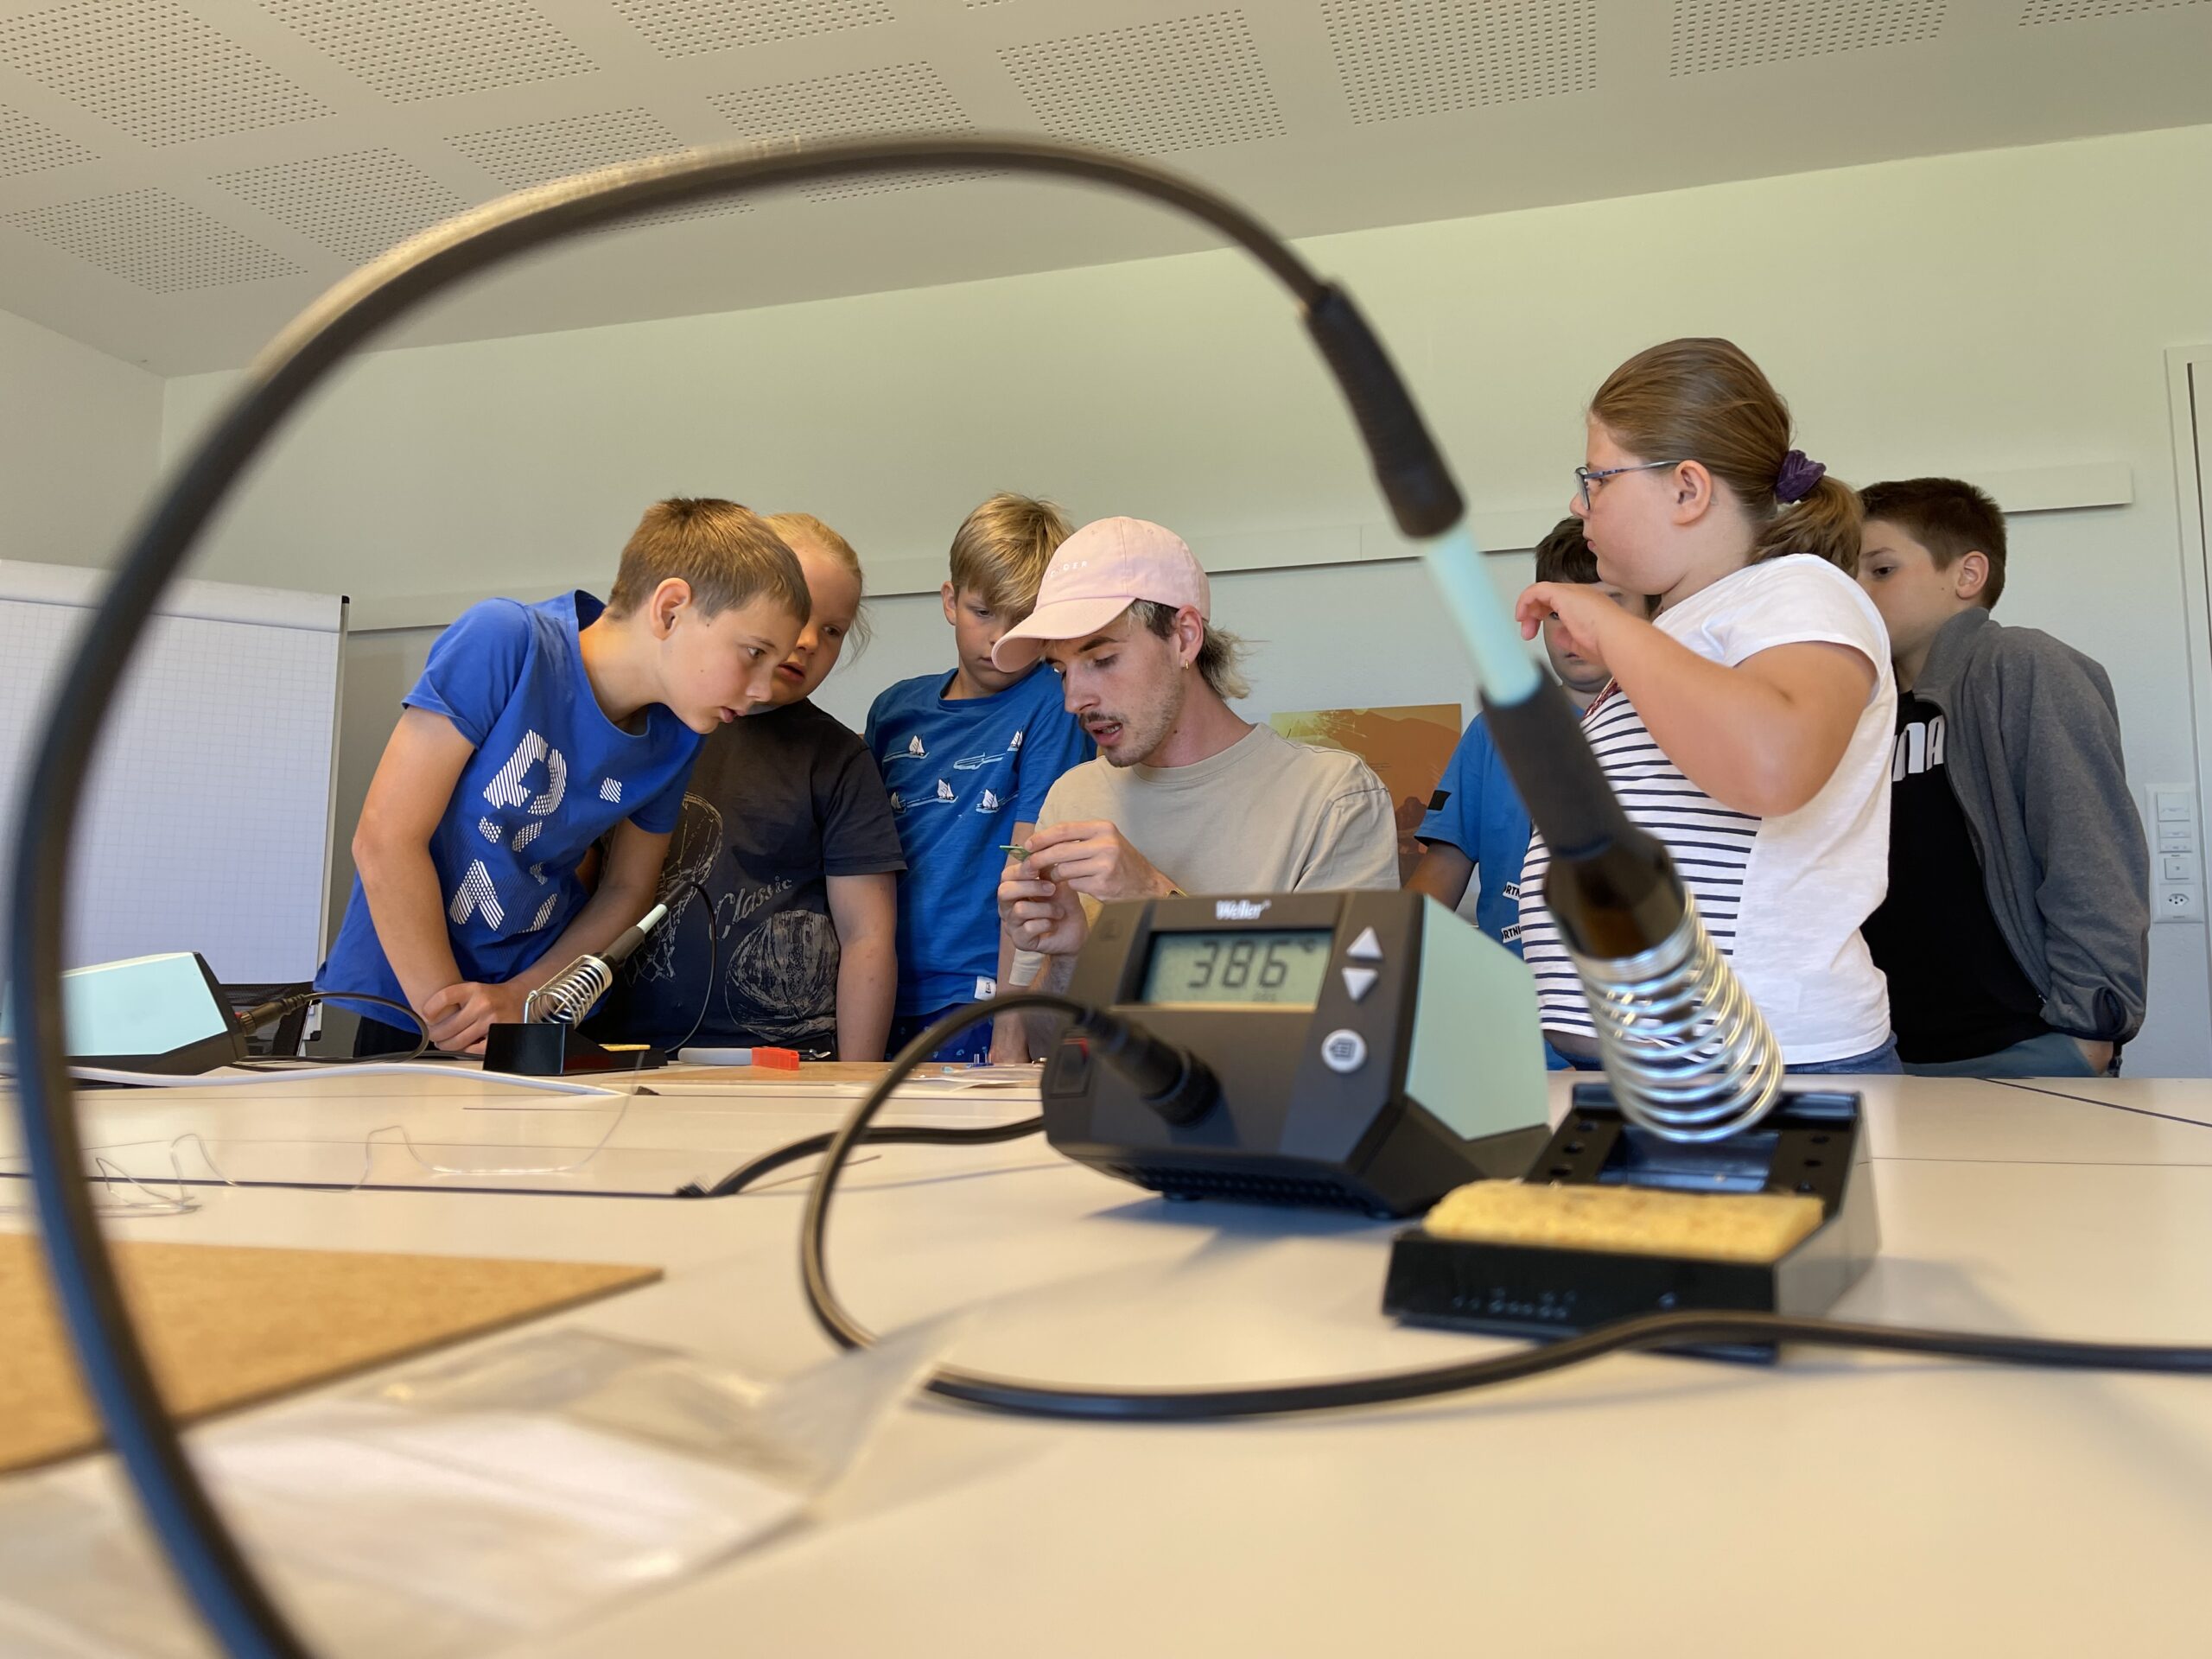 Kursleiter Dario Breitenstein zeigt sechs Technik interessierten Kindern am Workshop, der die Elektra zusammen mit dem Museum enter.ch im Rahmen des Ferienpasses Bucheggberg anbietet, wie sie ihr Roböterli basteln können.